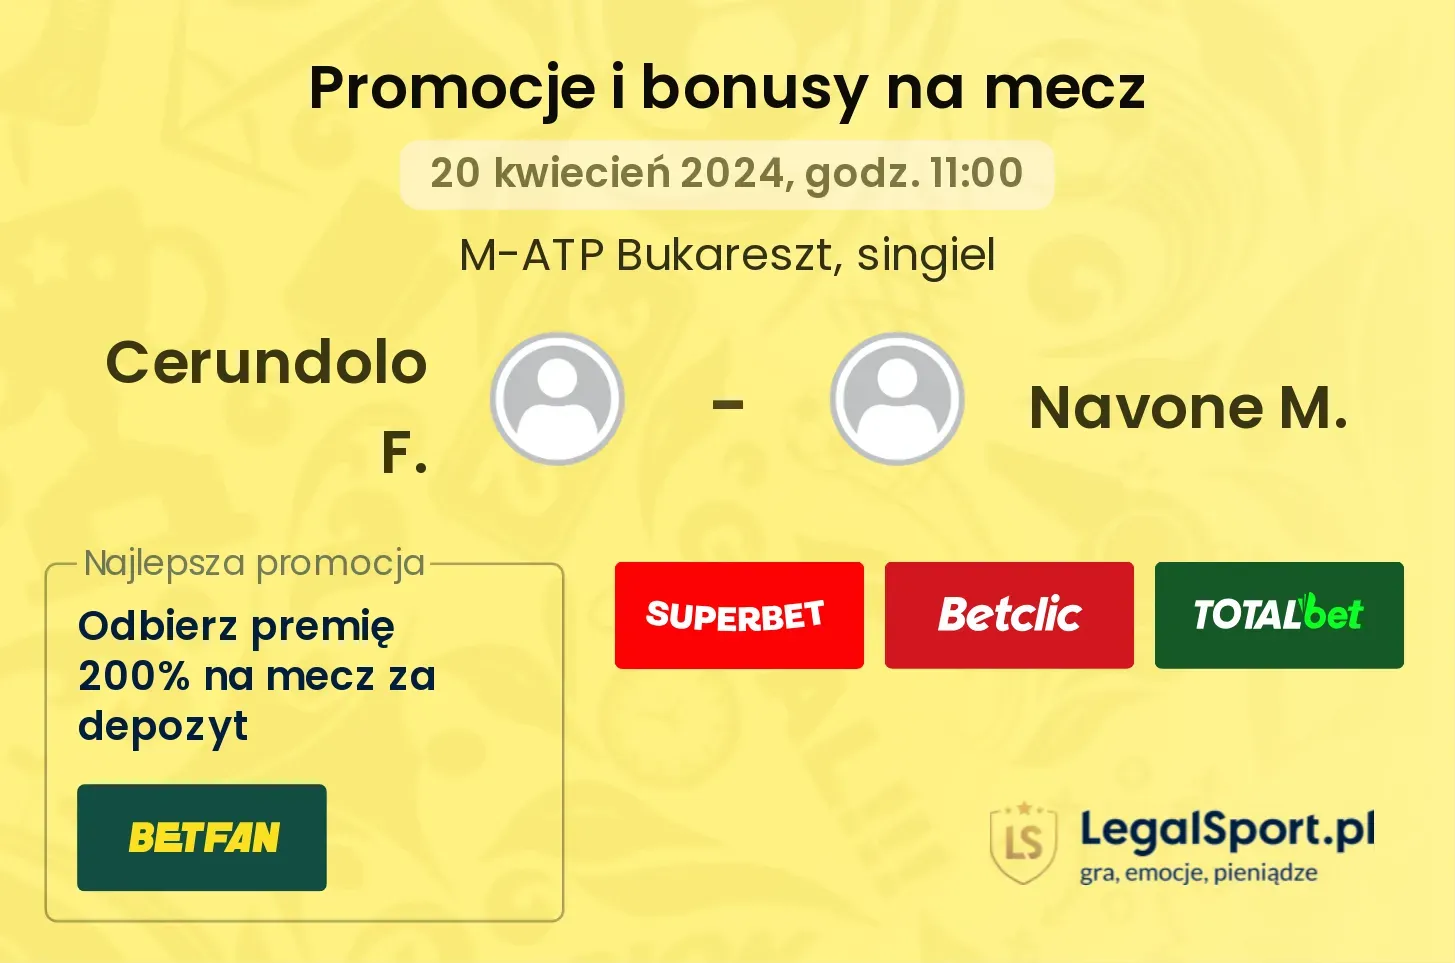 Cerundolo F. - Navone M. promocje bonusy na mecz